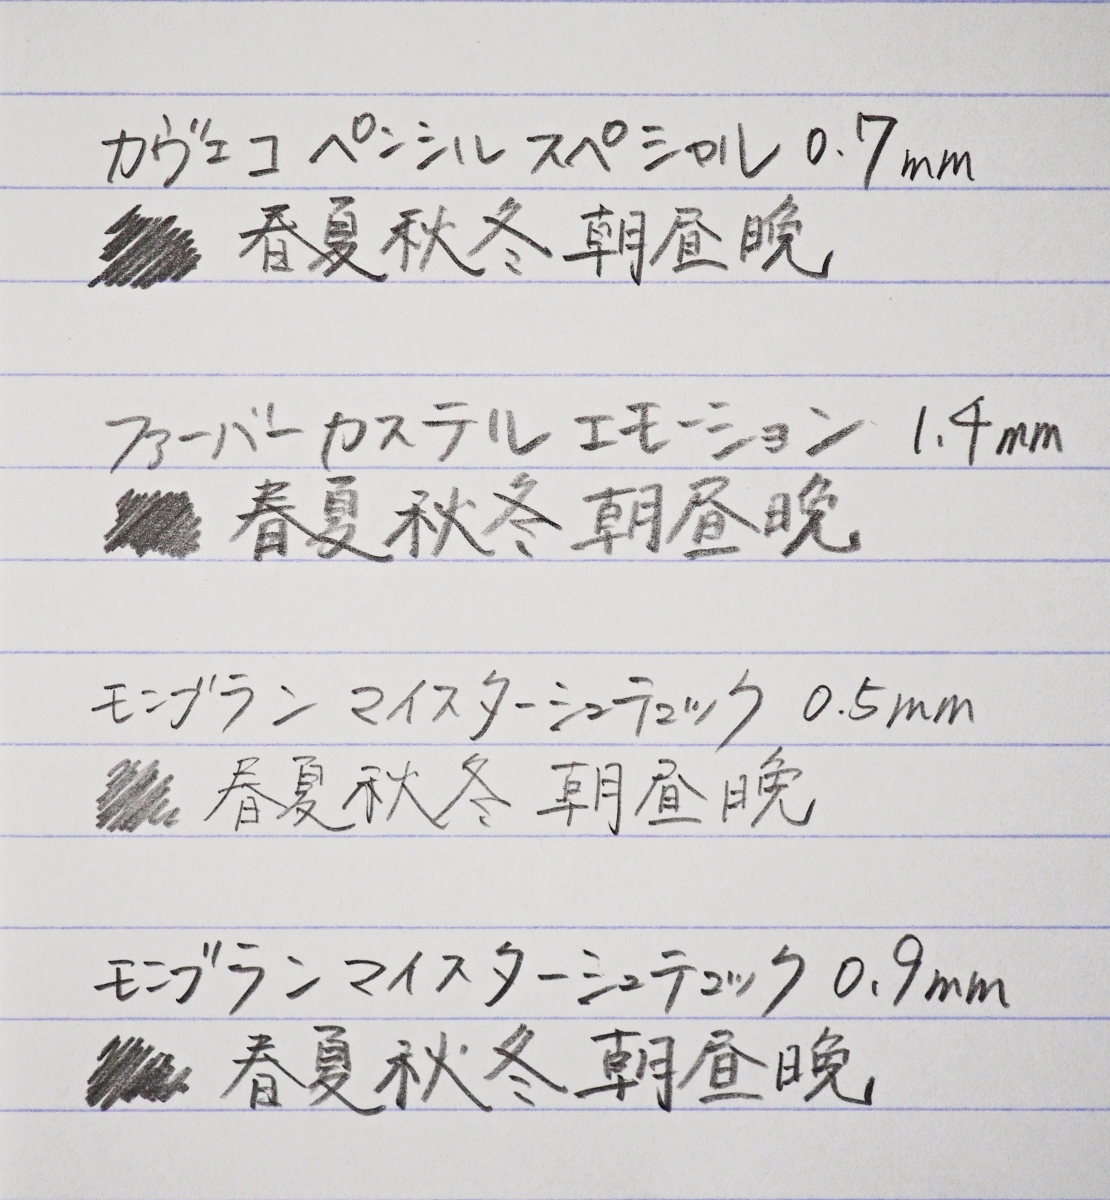 カヴェコ ペンシルスペシャル スペシャル 0.5 レッド シャーペン #141+